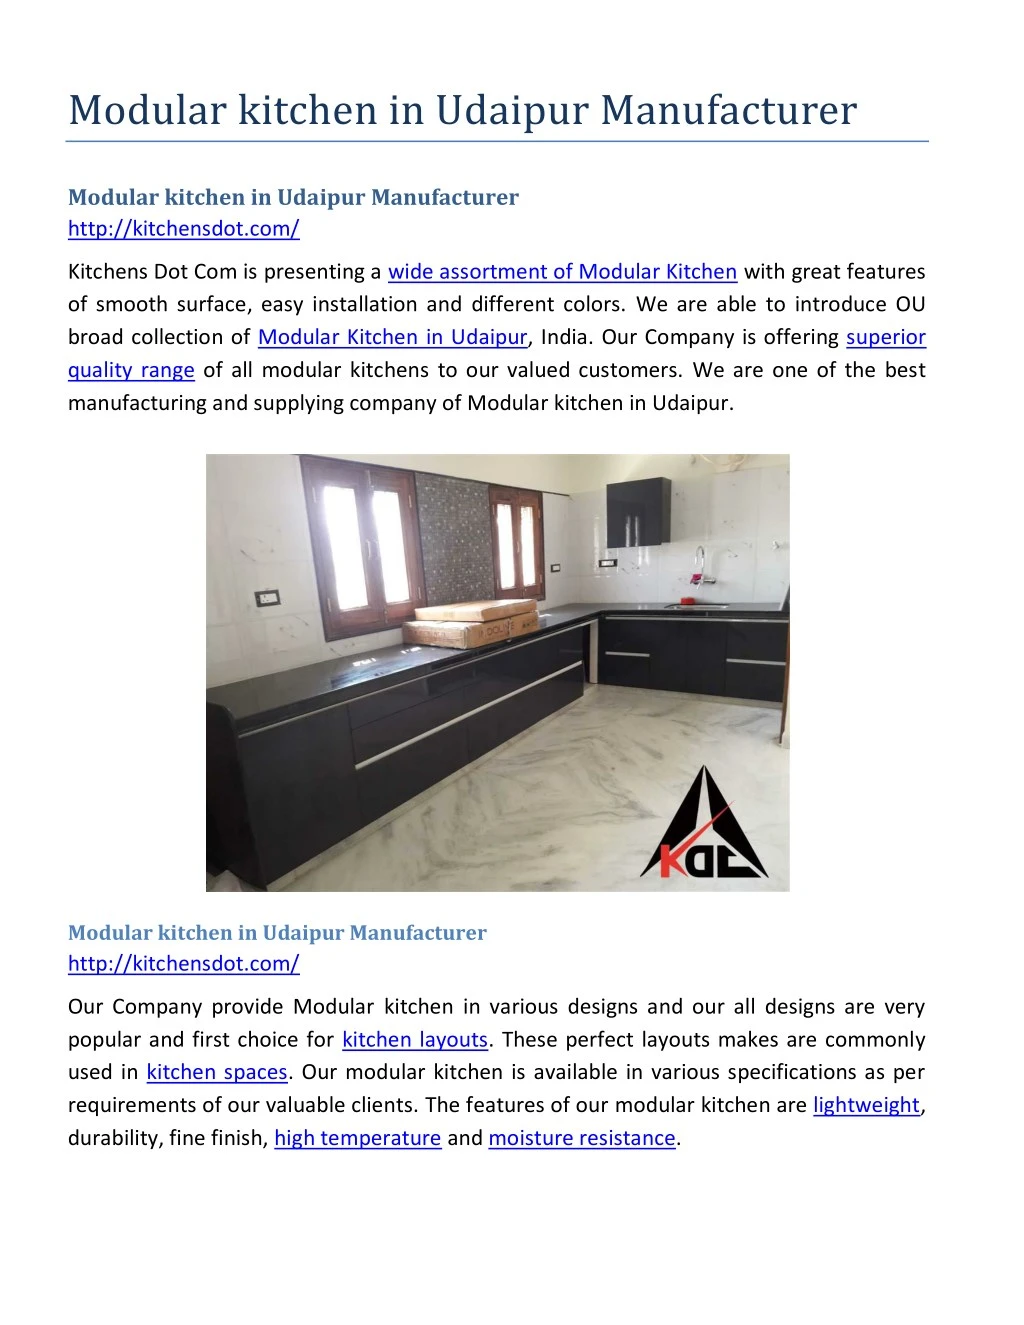 modular kitchen in udaipur manufacturer